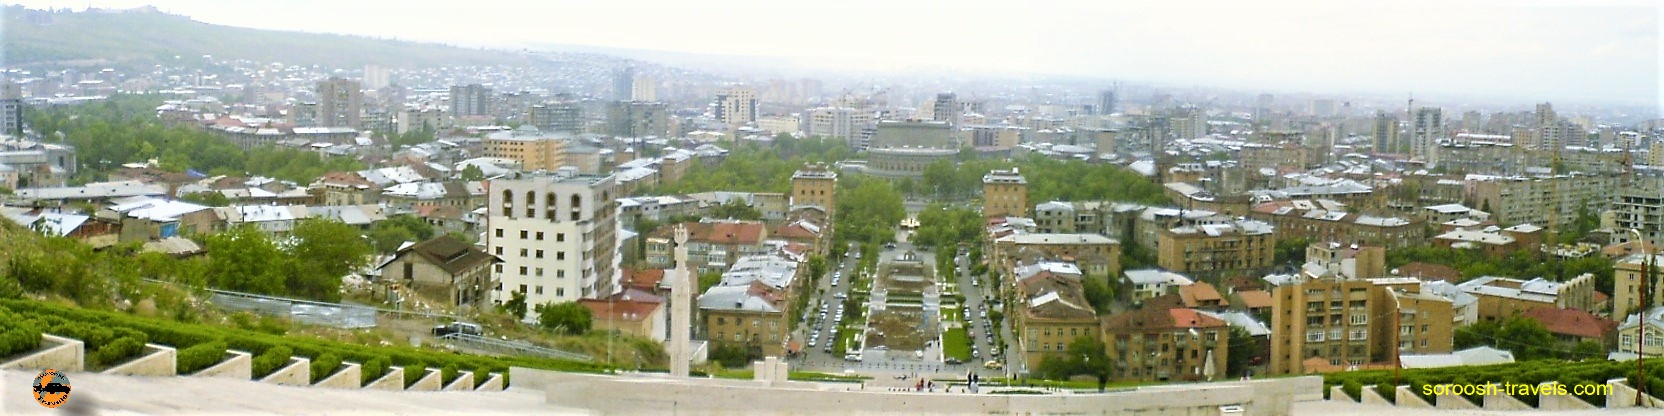  ایروان - ارمنستان - بهار ۱۳۸۷